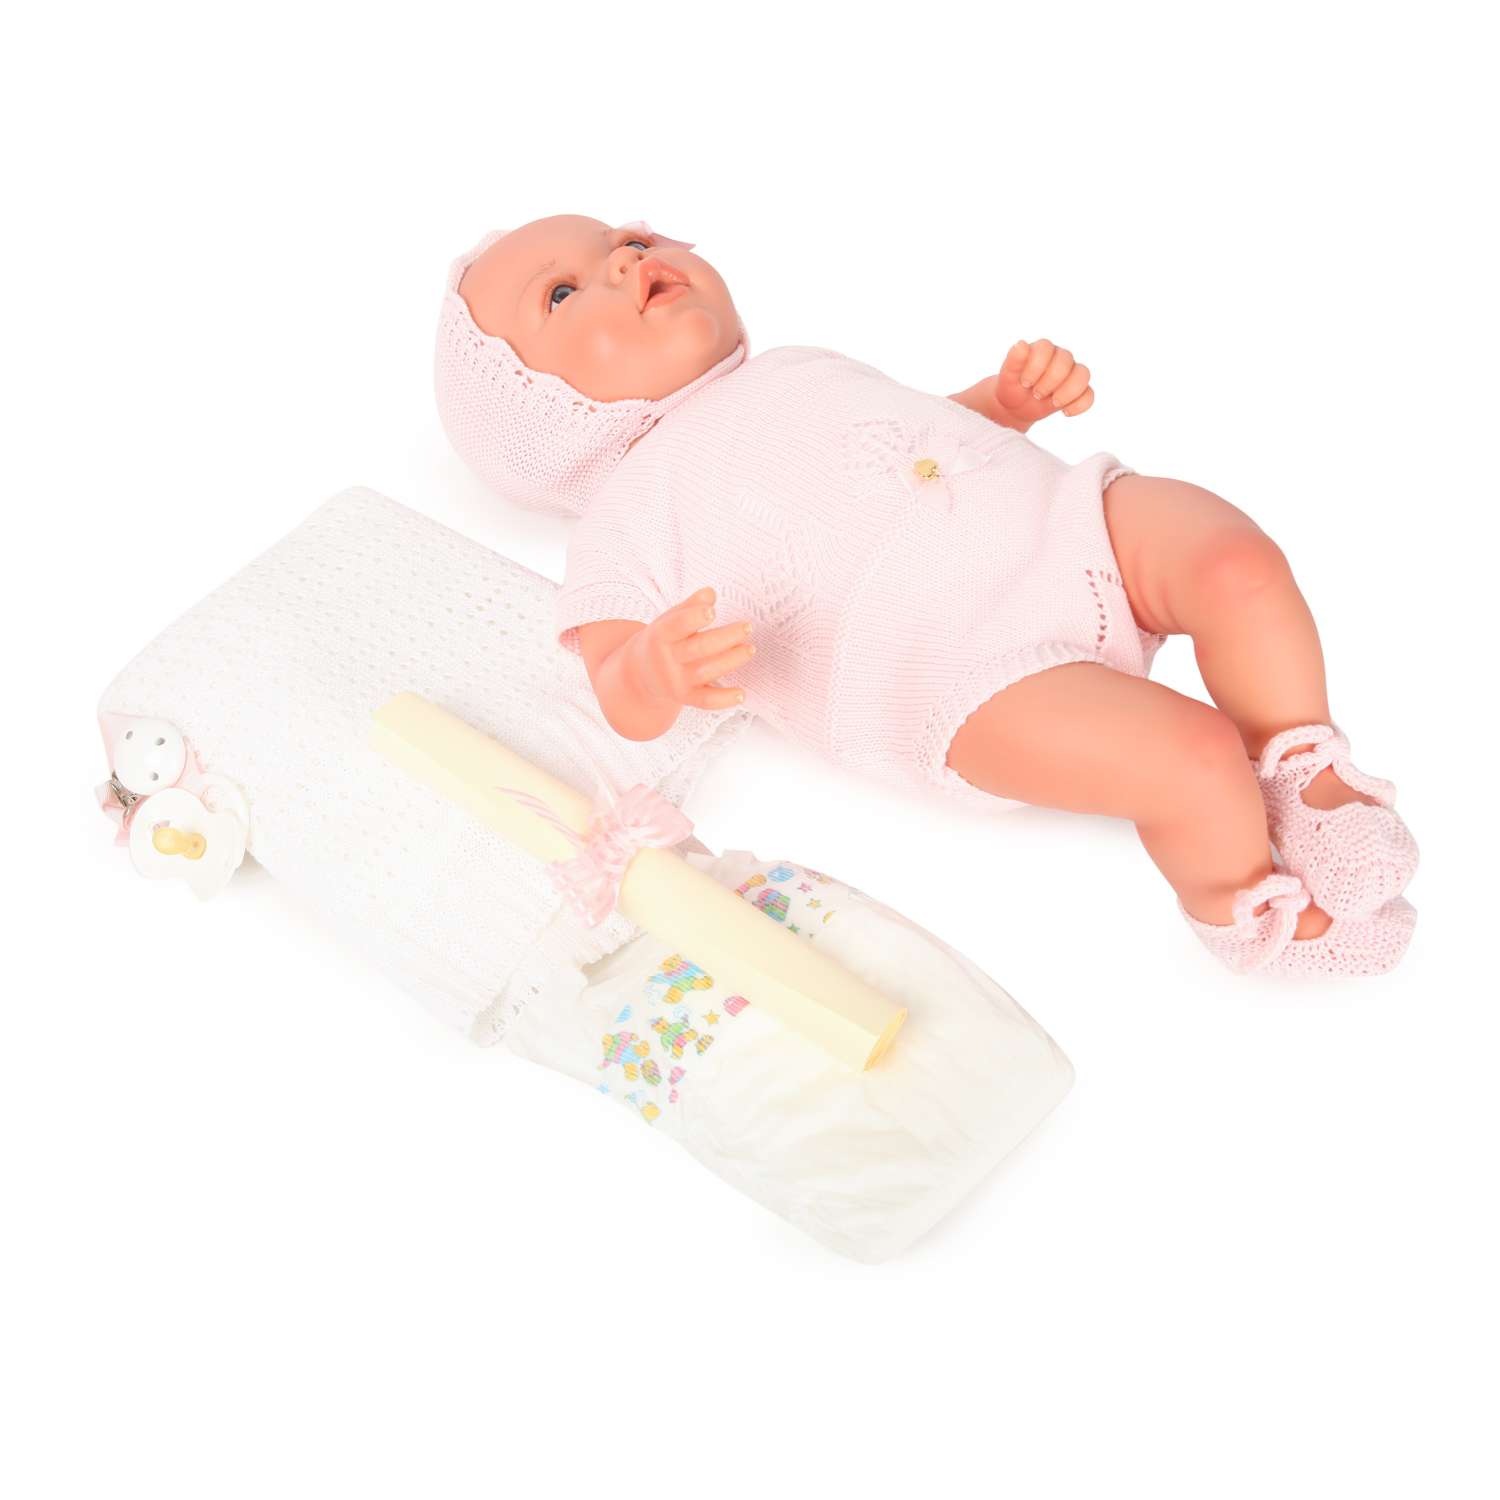 Пупс MARINA & PAU новорожденный в розовом боди 3040 3040 - фото 1